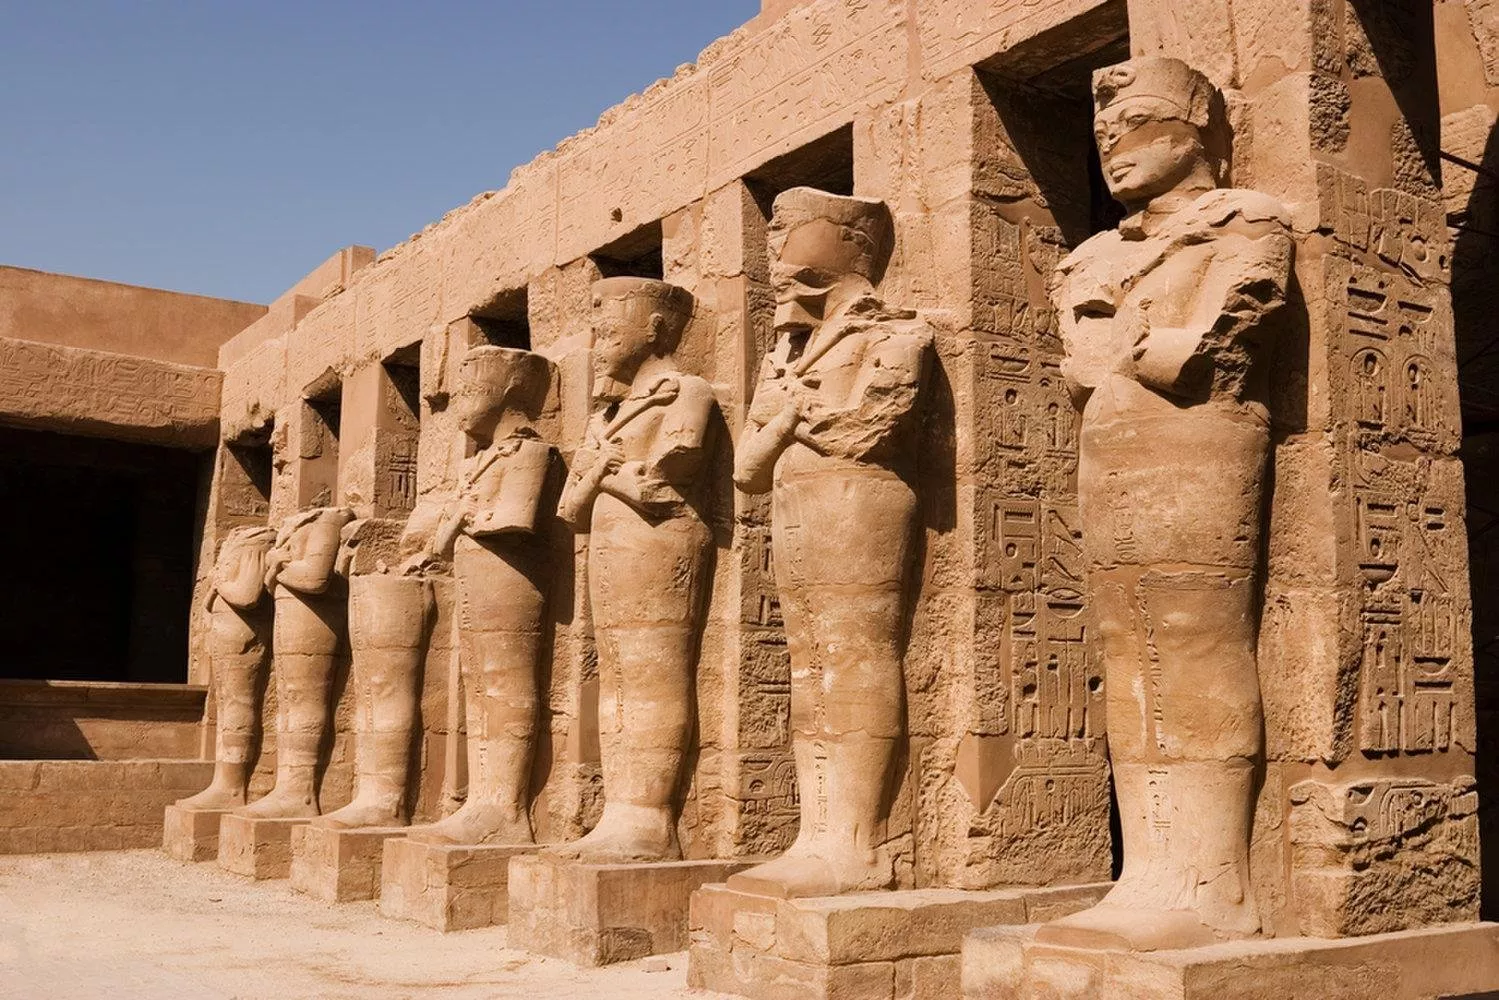 السياحة في مصر: إن سافرتِ إليها، فلا تفوّتي زيارت أبرز الاماكن السياحية